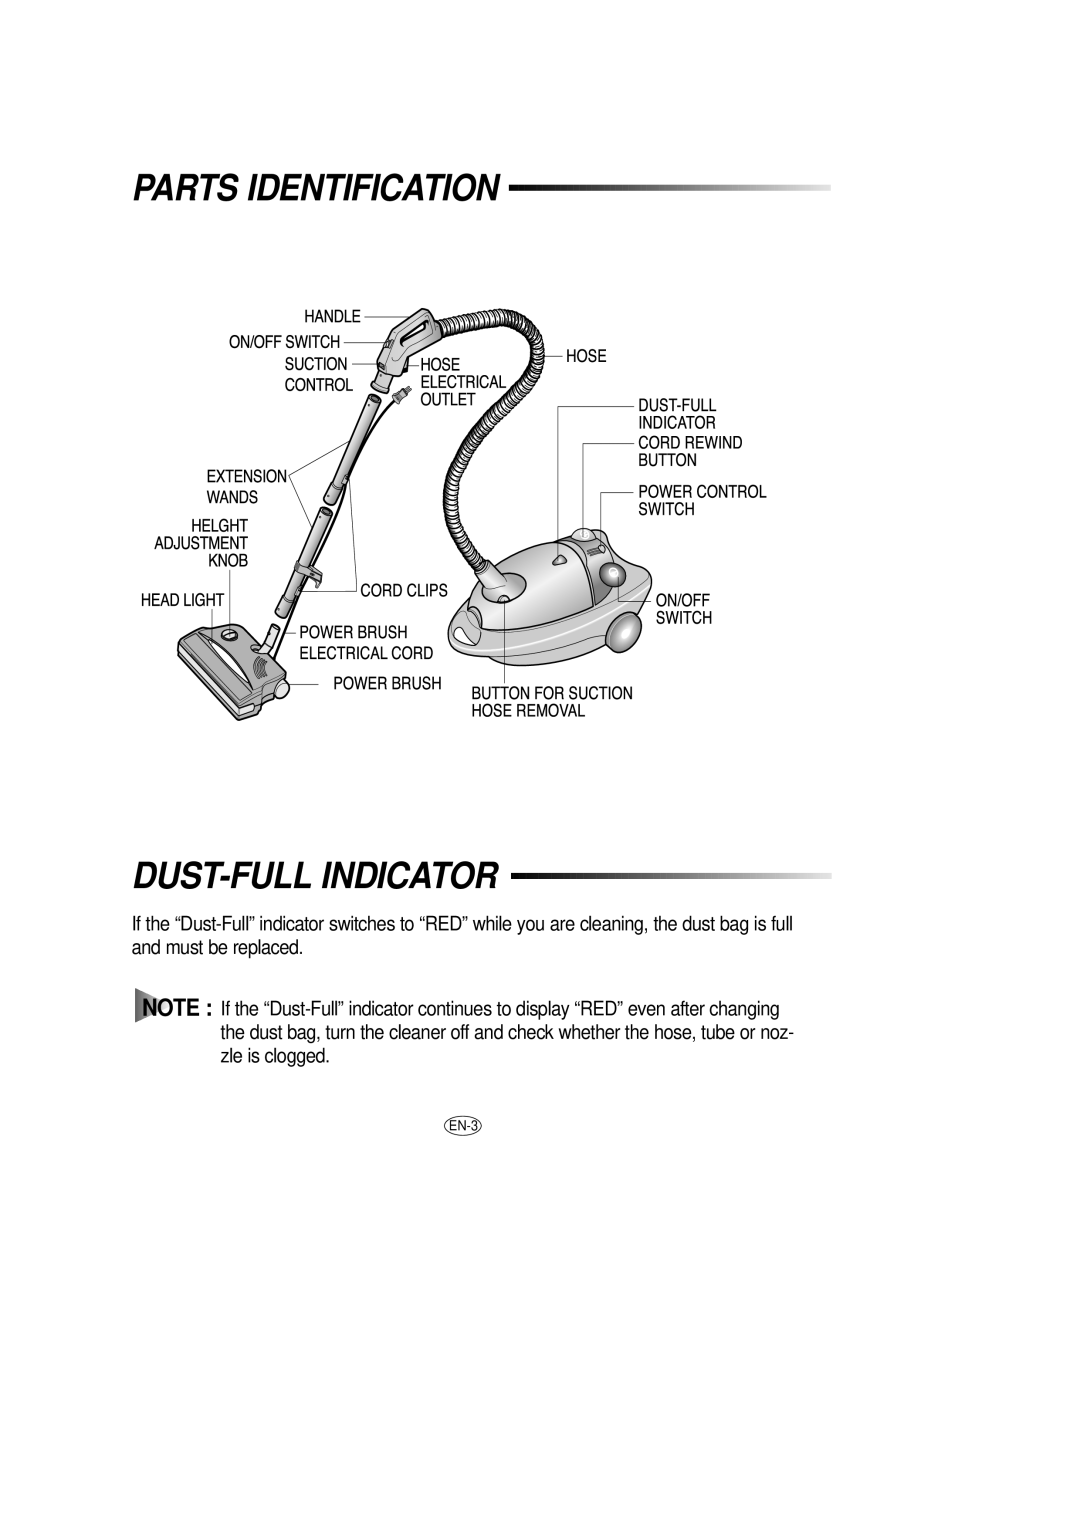 Samsung DJ68-00079J manual Parts Identification Dust-Fullindicator, EN-3 